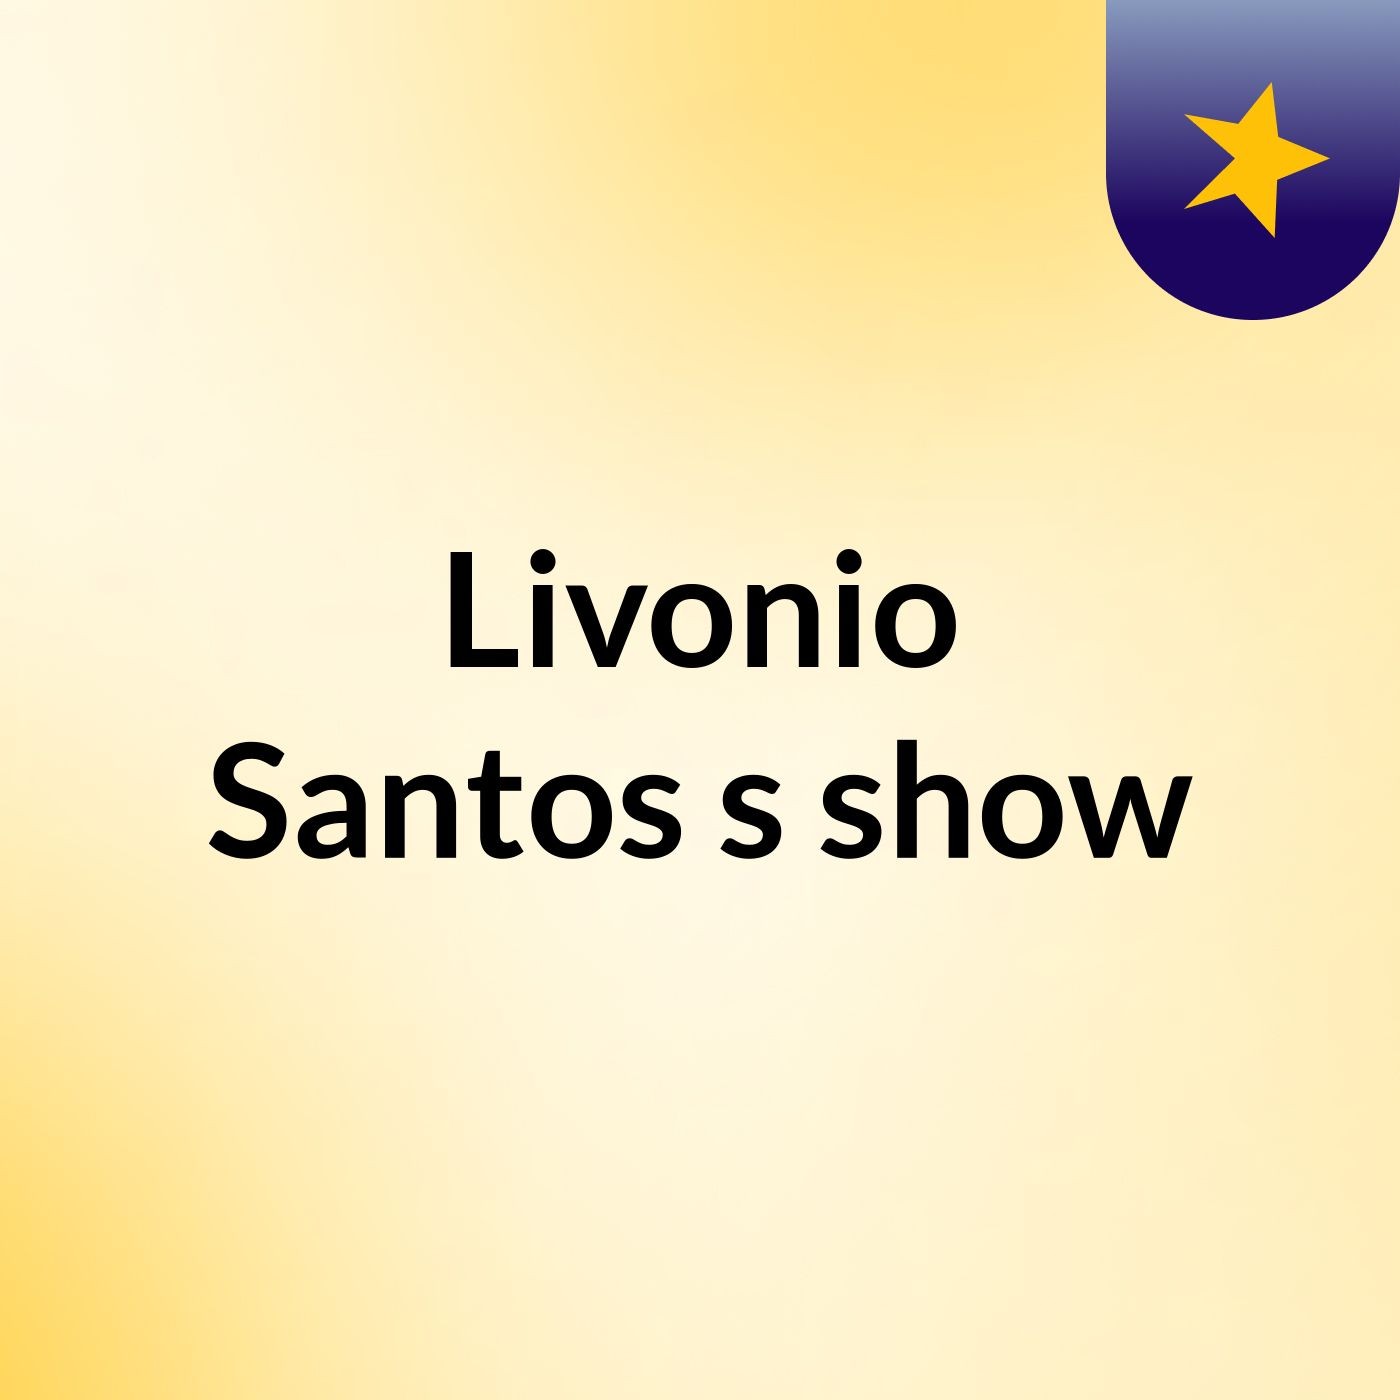 Livonio Santos's show